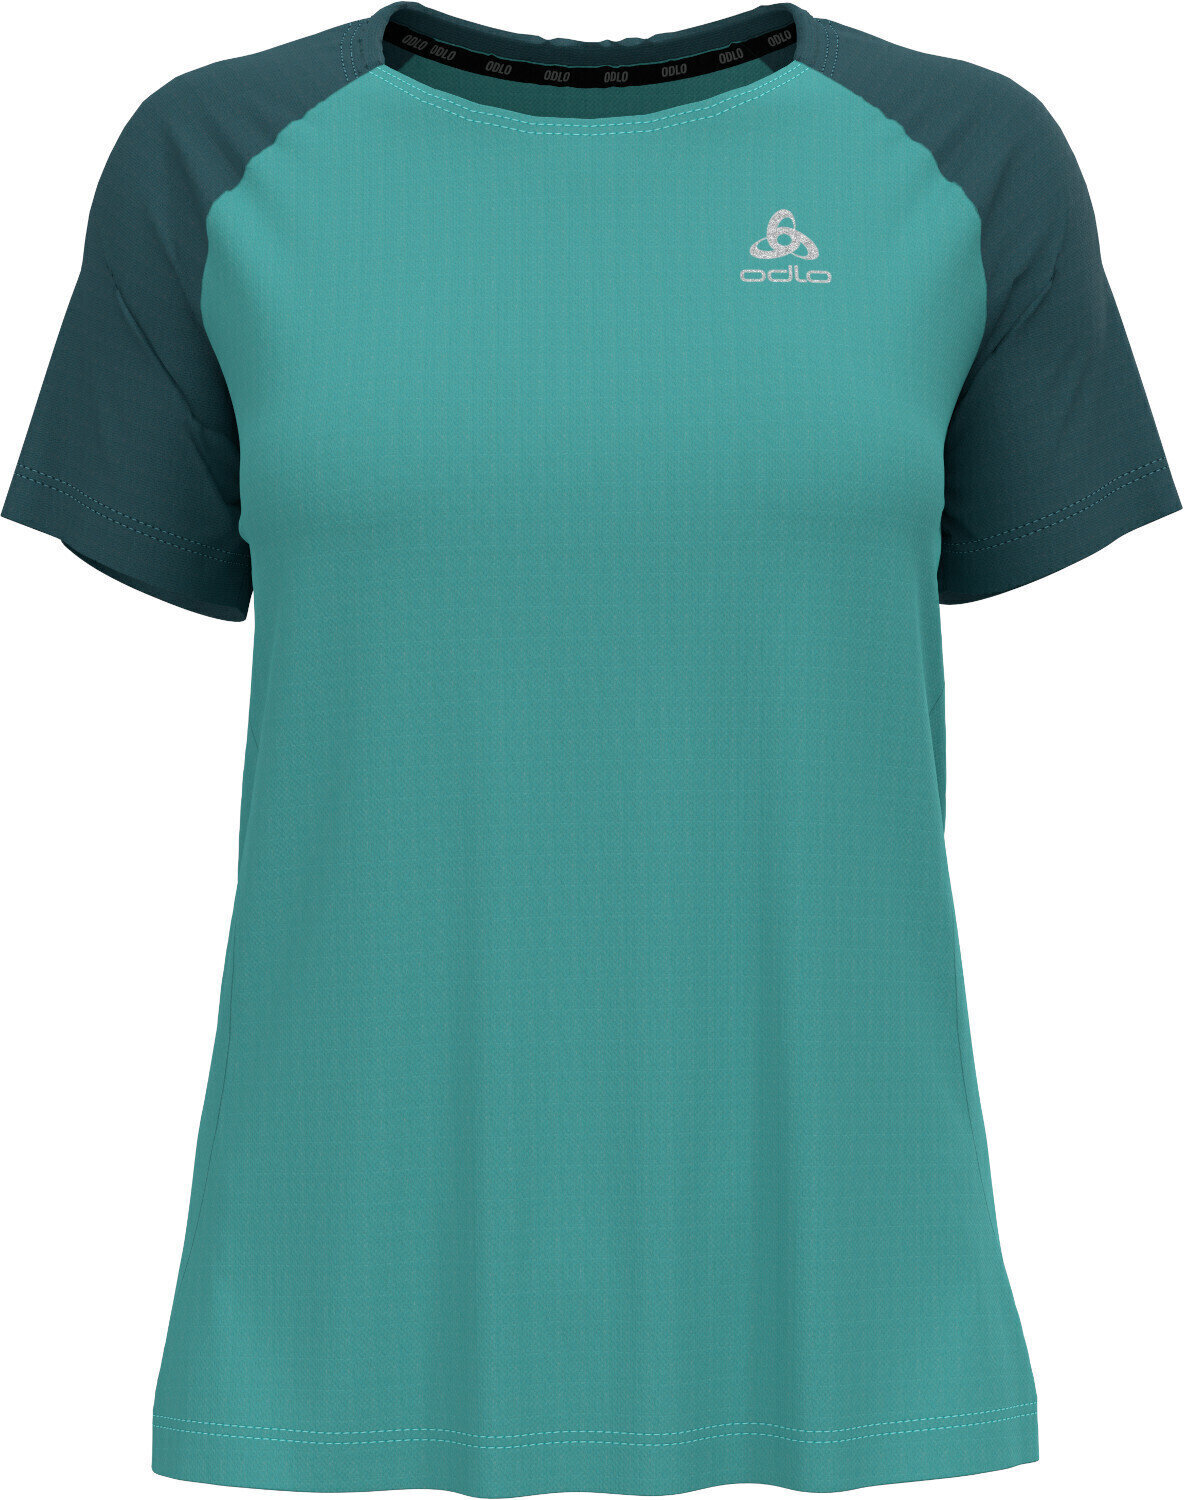 Majica za trčanje s kratkim rukavom
 Odlo Essential T-Shirt Jaded/Balsam S Majica za trčanje s kratkim rukavom